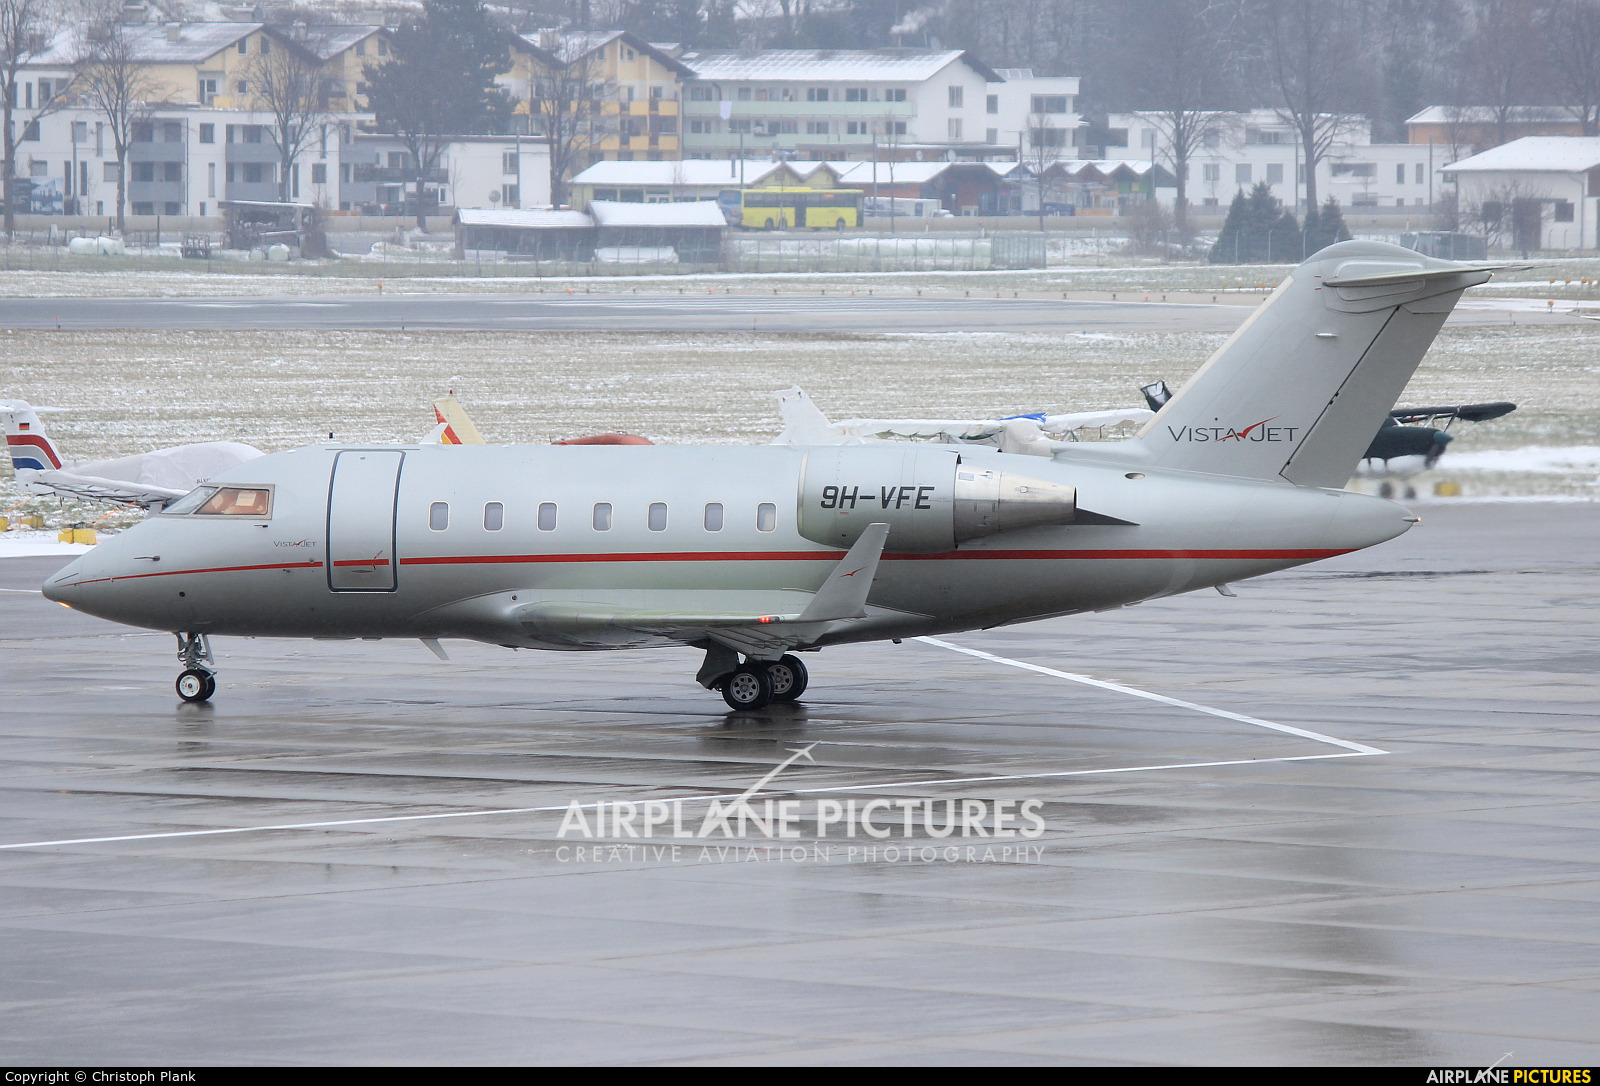 Vistajet 9H-VFE aircraft at Innsbruck